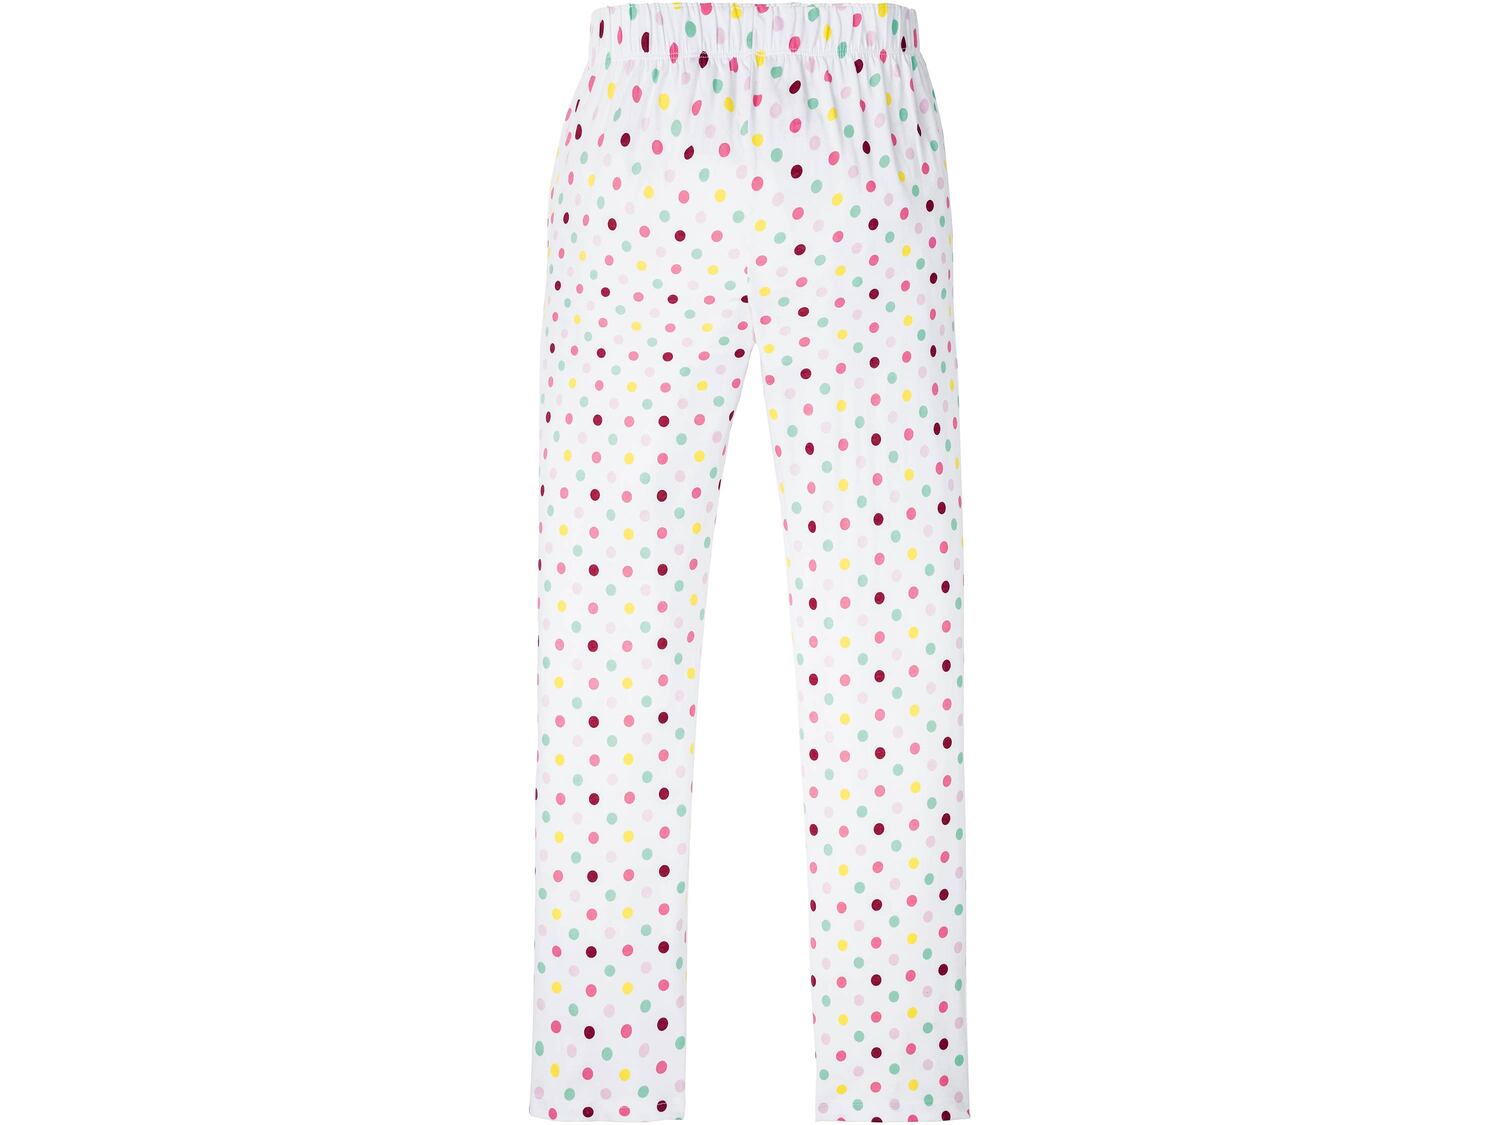 Spodnie do spania damskie Esmara Lingerie, cena 21,99 PLN 
- rozmiary: S-L
- 100% ...